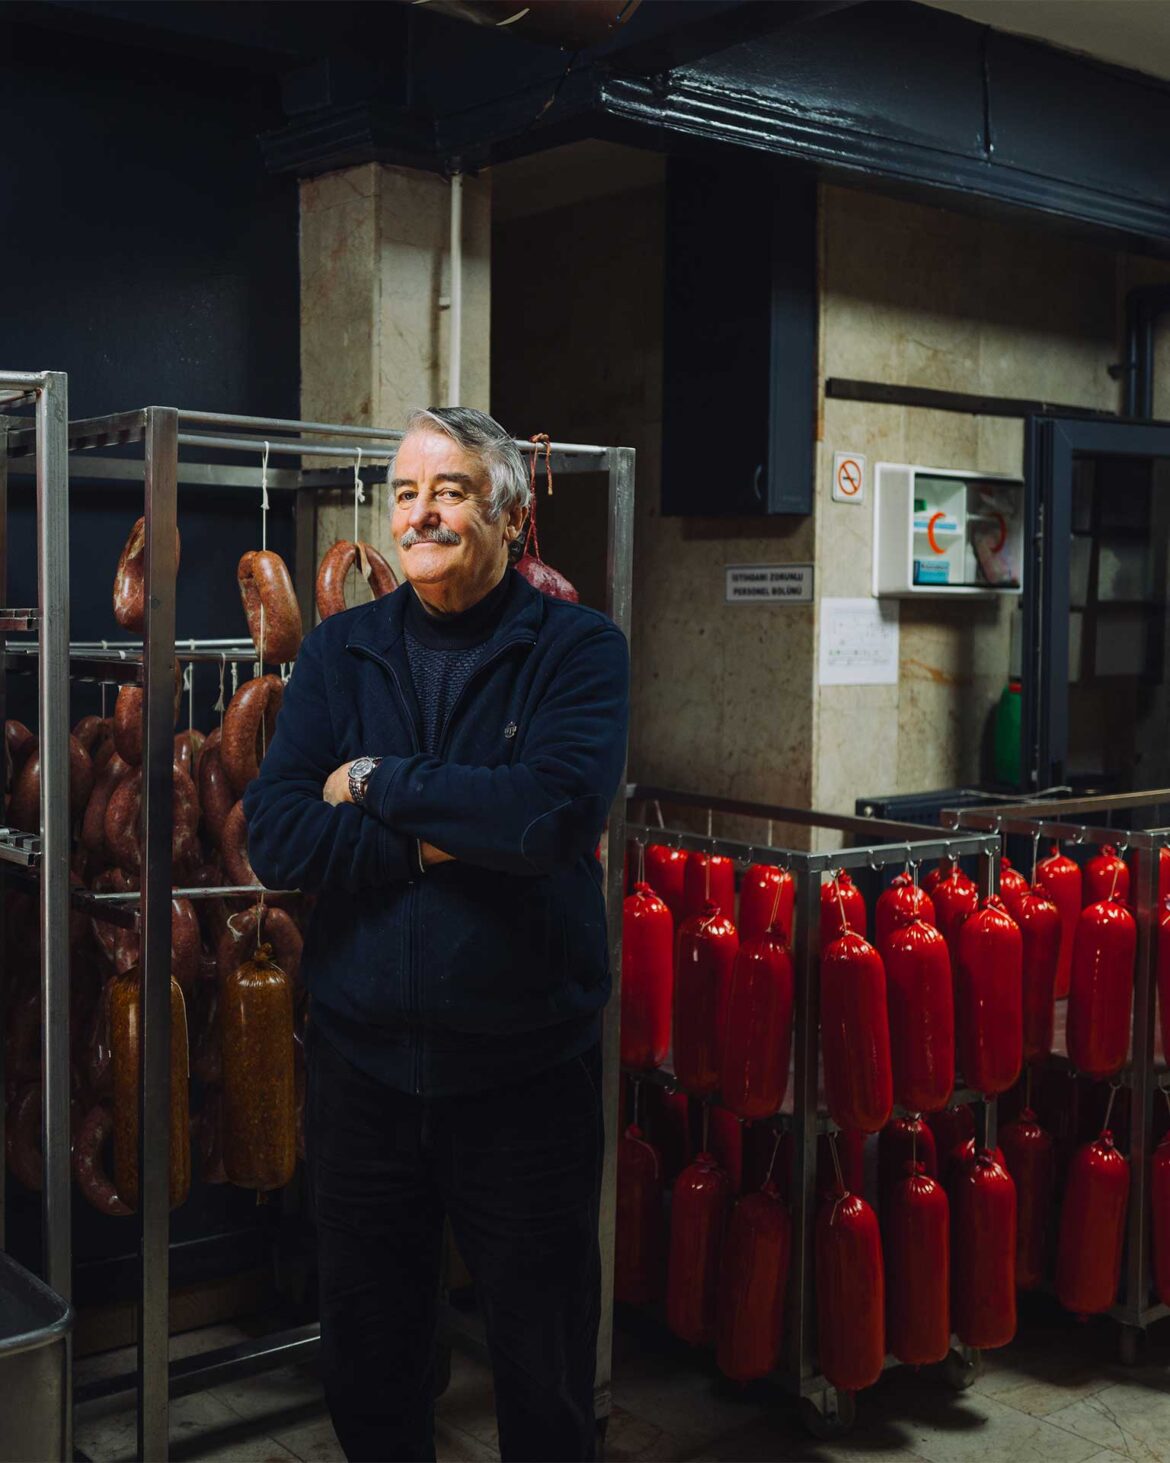 Κοζμάογλου-Yeni Ideal: Ένα ρωμαίικο αλλαντοποιείο στην Πόλη όπου όλα γίνονται γιαβάς γιαβάς